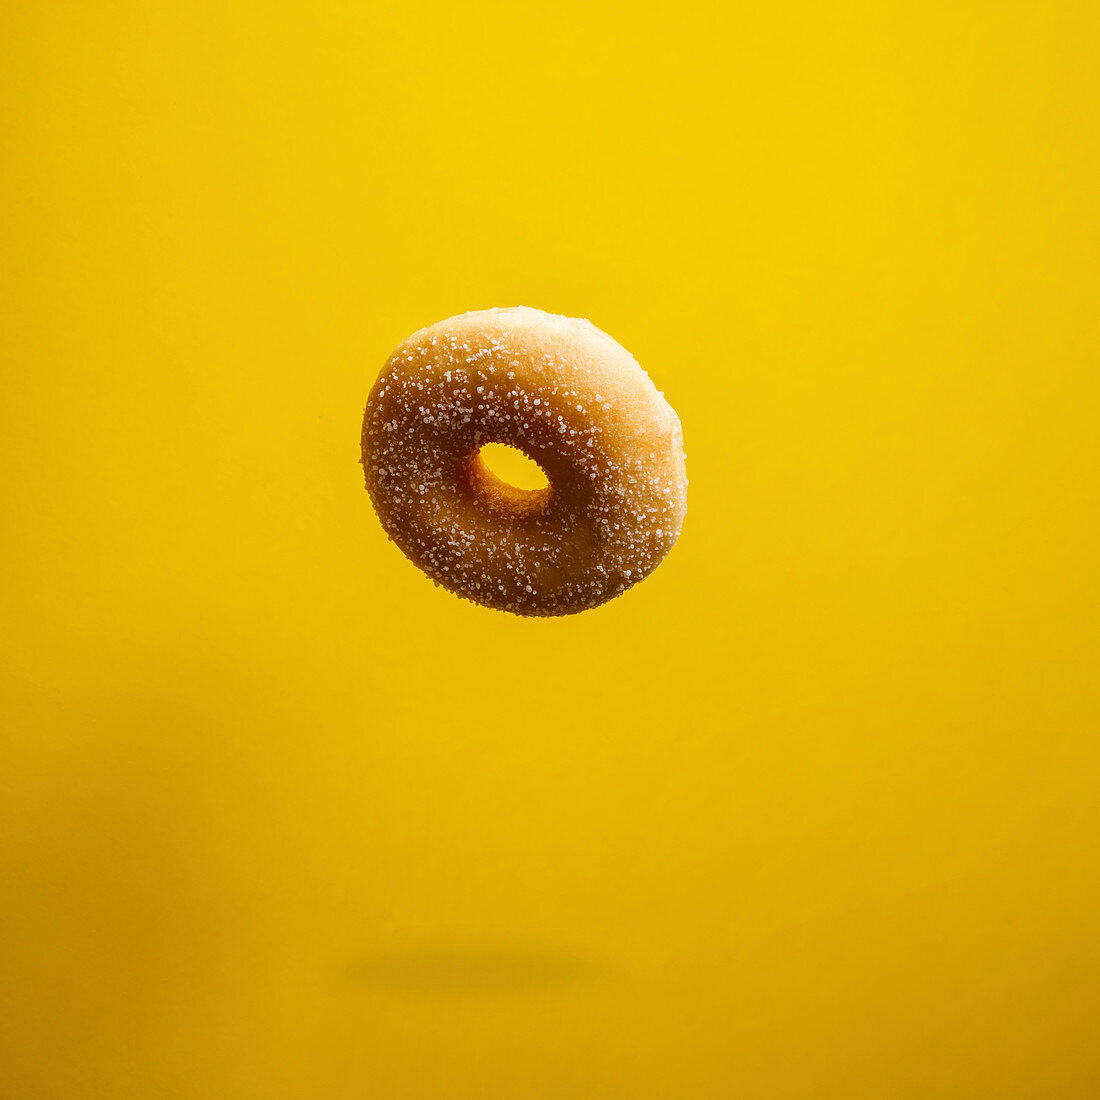 Ein Donut fällt auf gelben Untergrund